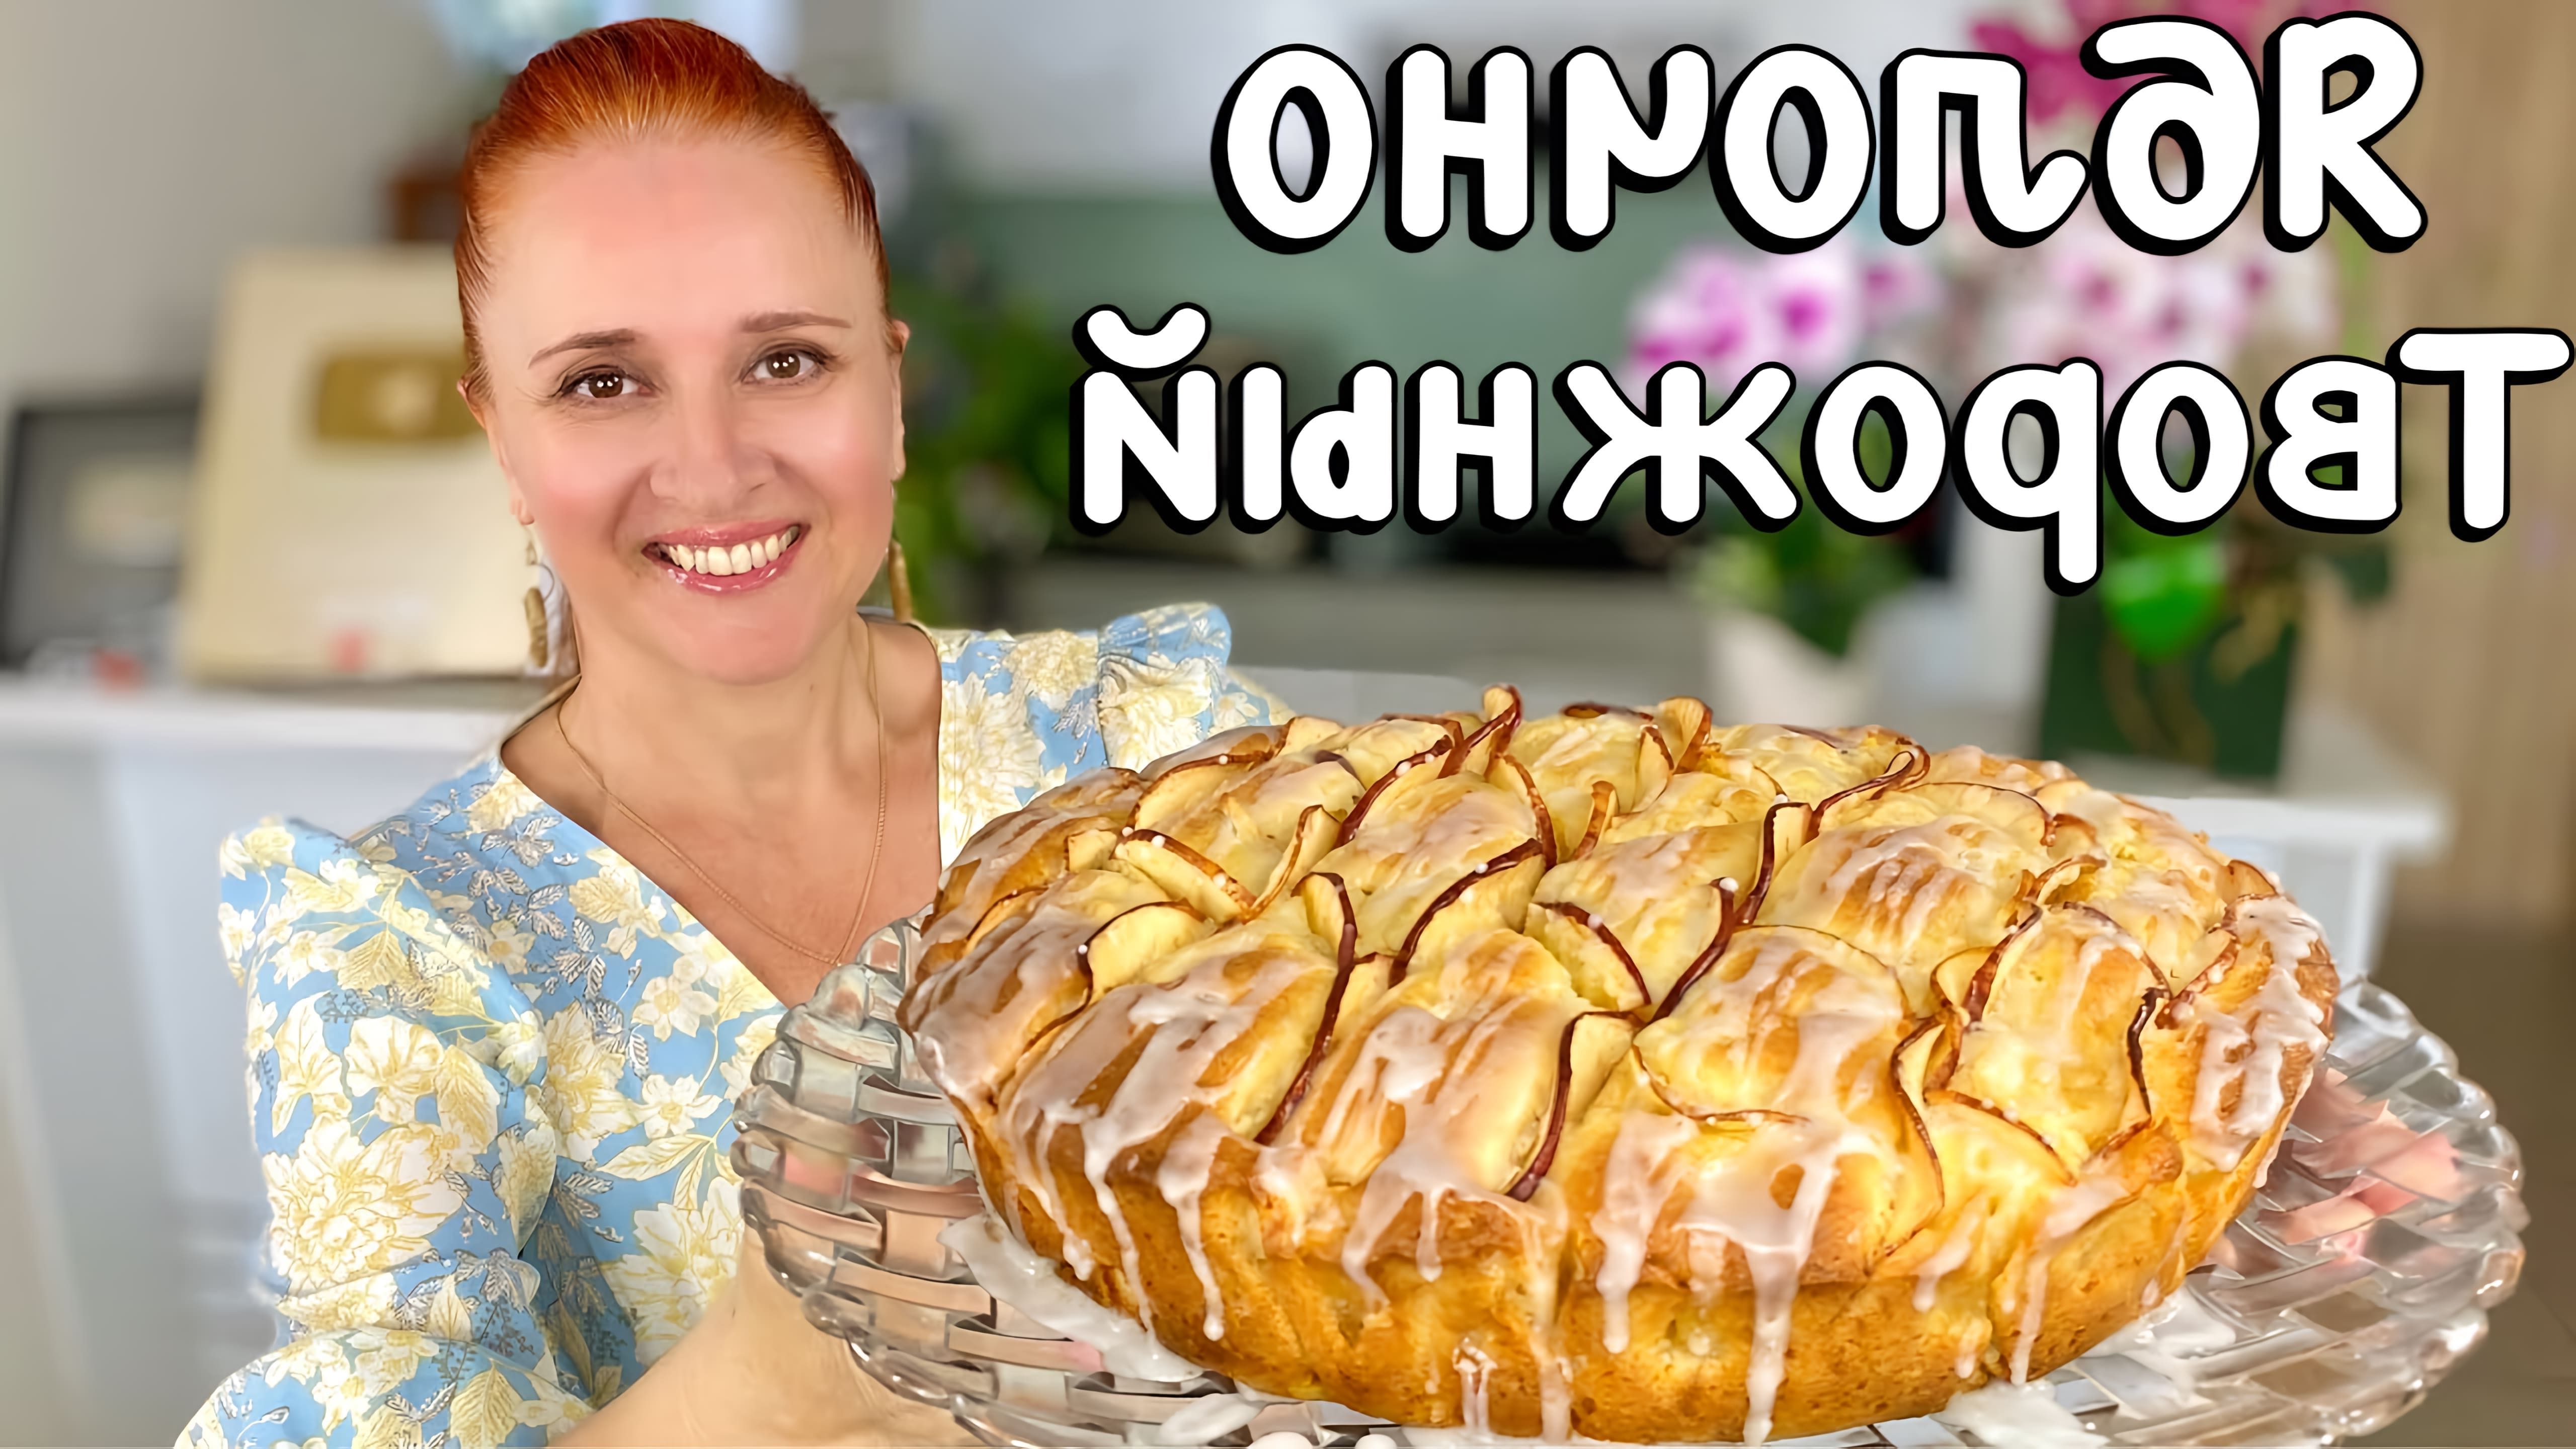 В этом видео демонстрируется рецепт приготовления творожного яблочного пирога, который также известен как шарлотка